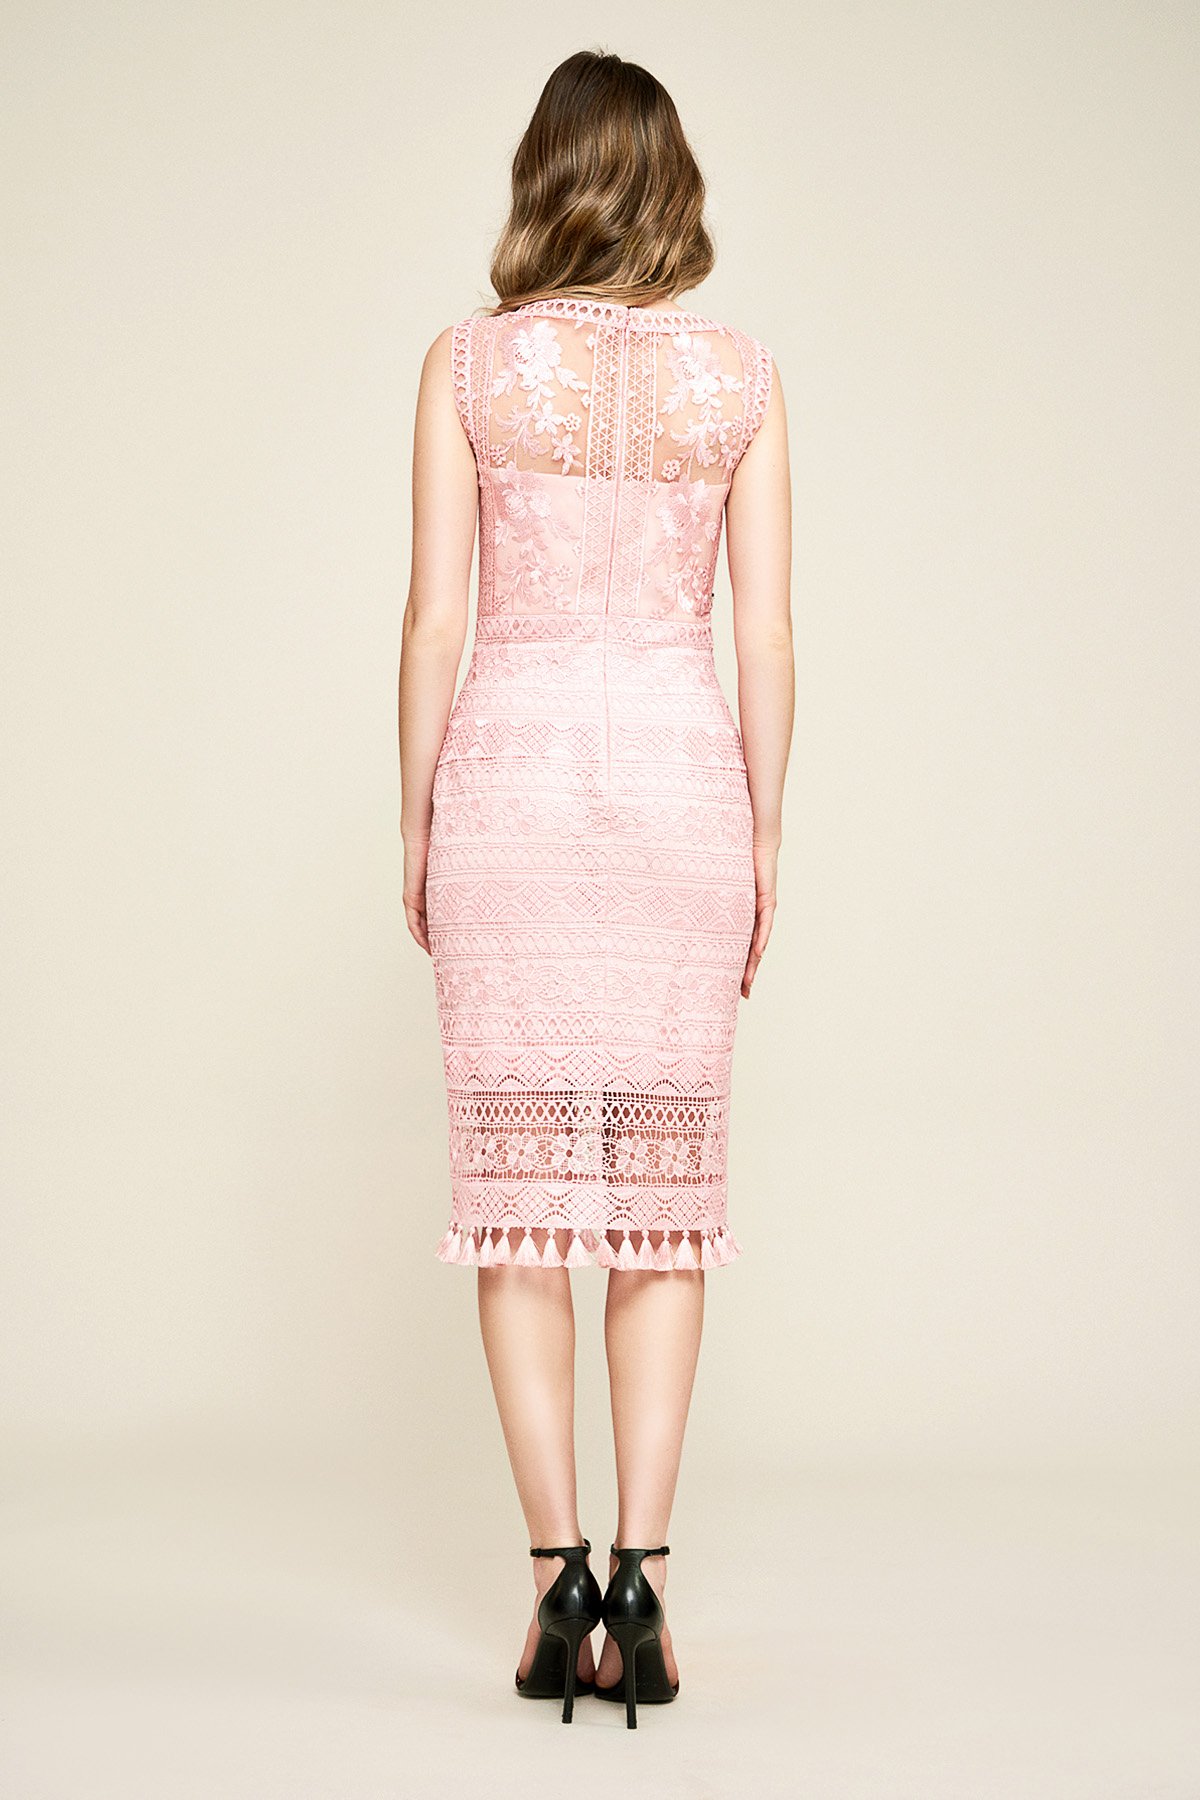 Tadashi Shoji - Moanna Lace Embroidered Dress